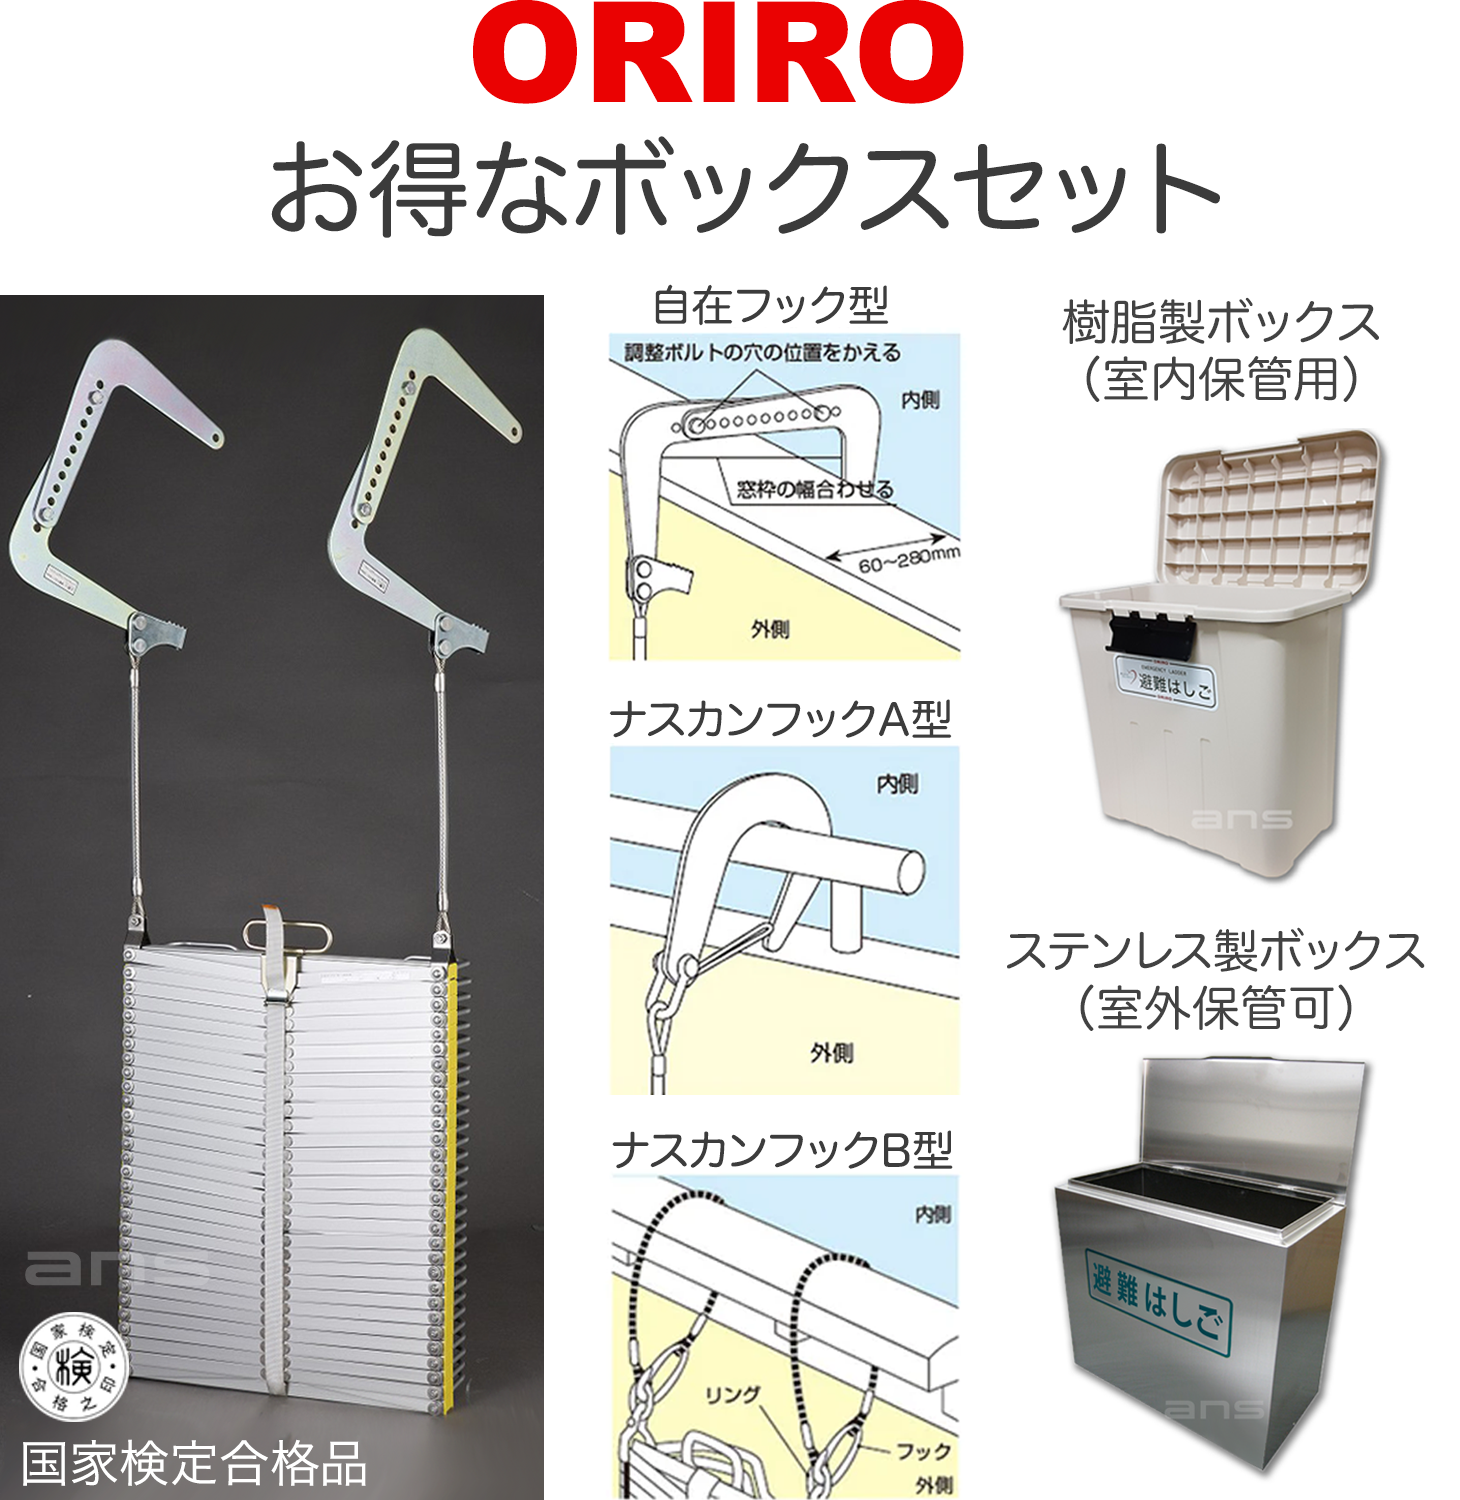 お得なボックスセット。ORIROアルミ製避難はしご 9型 + 収納ボックス。国家検定合格品。設置可能範囲の高さ：自在フック9